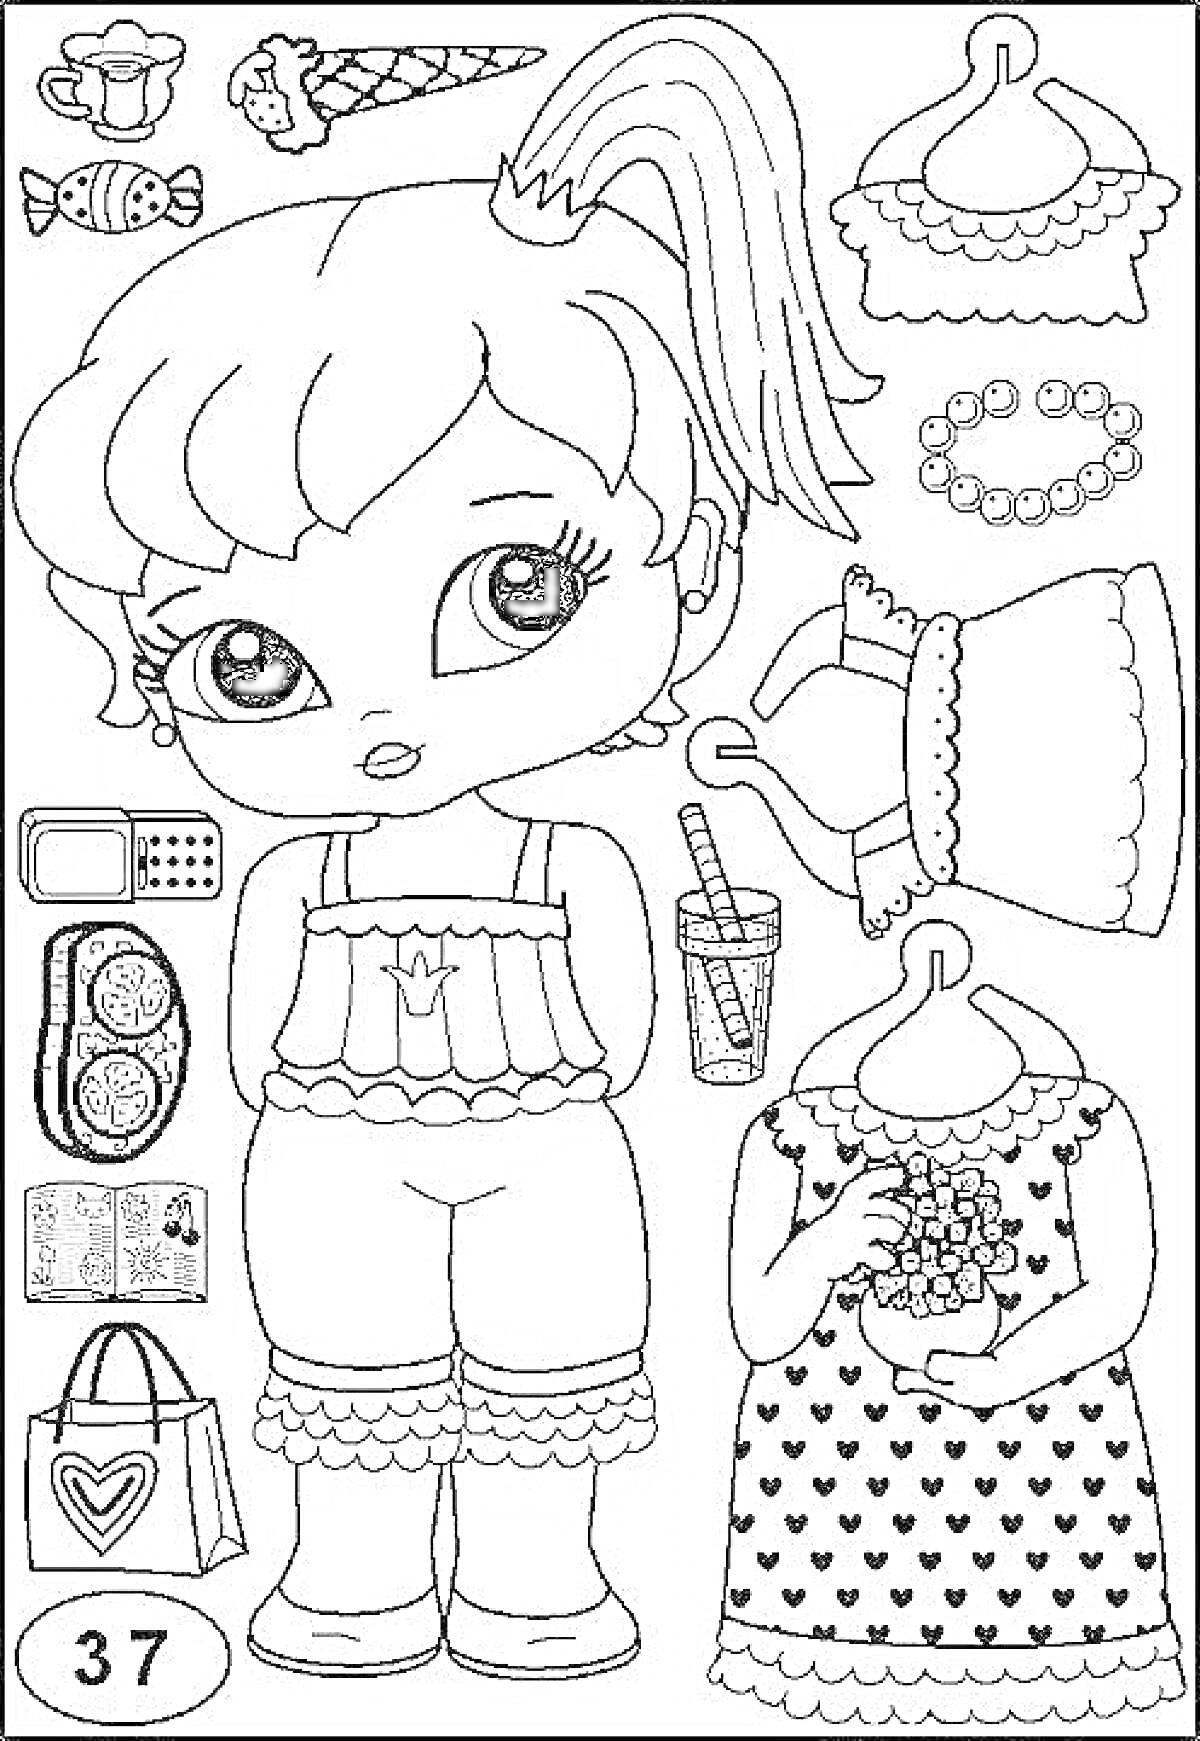 Раскраска кукла ЛОЛ с одеждой и аксессуарами, конфеты, мороженое, платье на вешалке, сумочка с сердечком, мобильный телефон, браслет, кроссовки, напиток